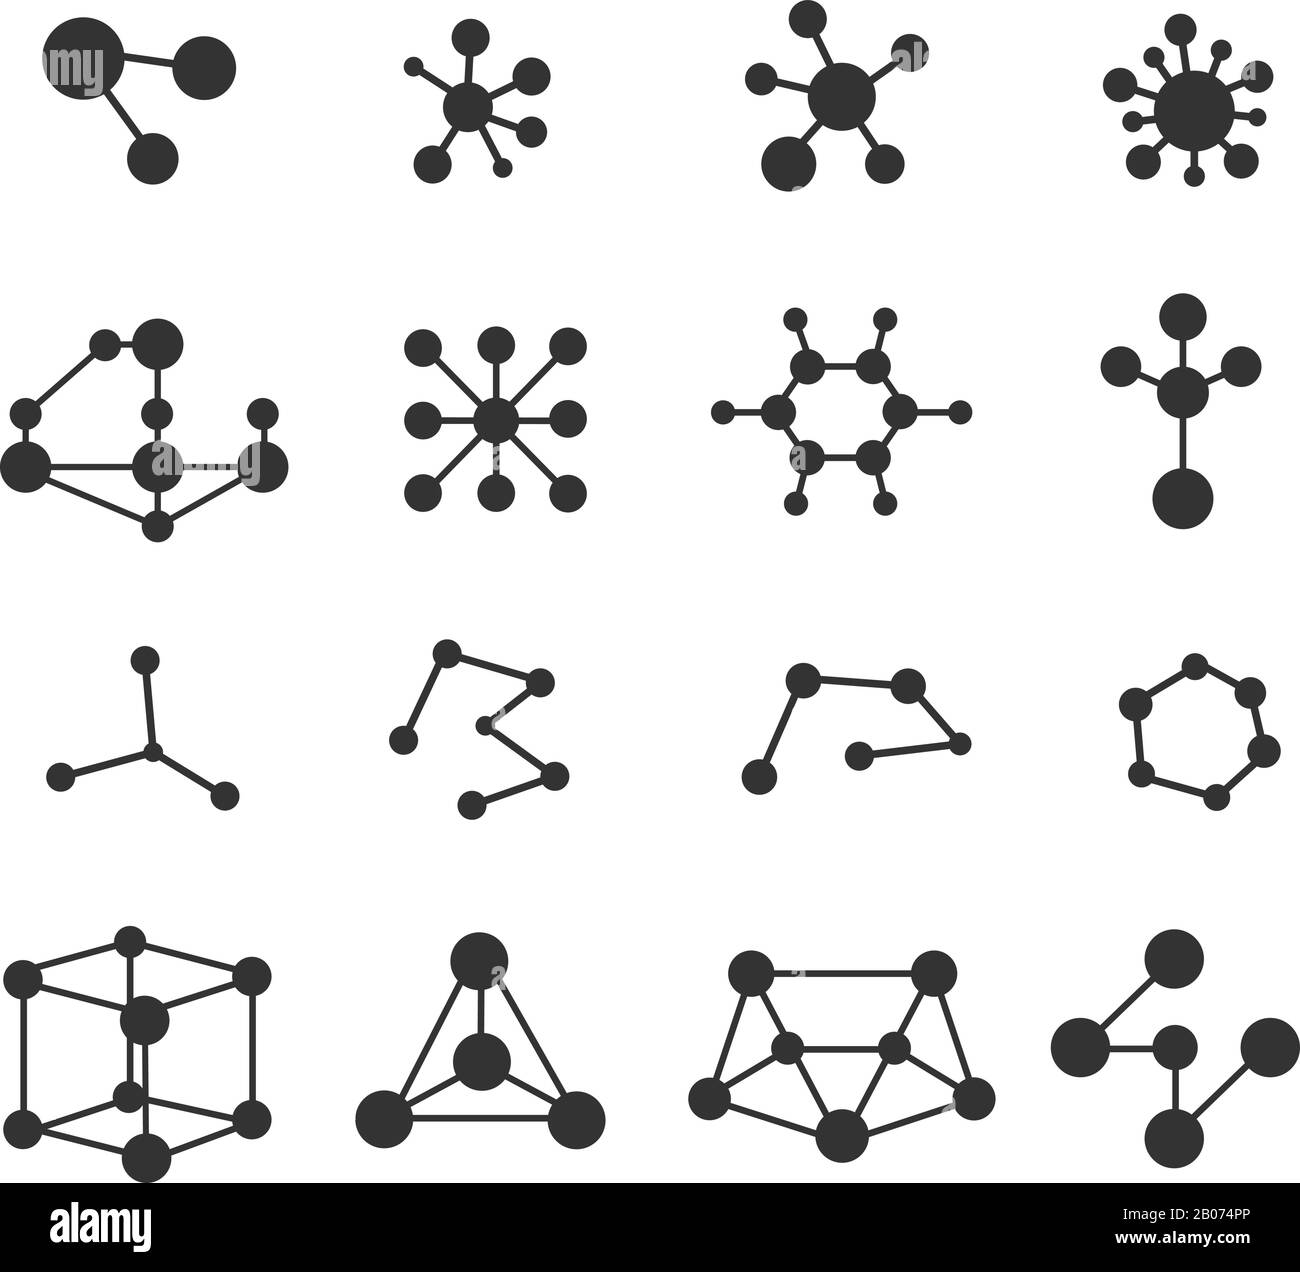 Ensemble de vecteurs d'icônes de molécules. Recherche Atom et illustration de la structure chimique Illustration de Vecteur